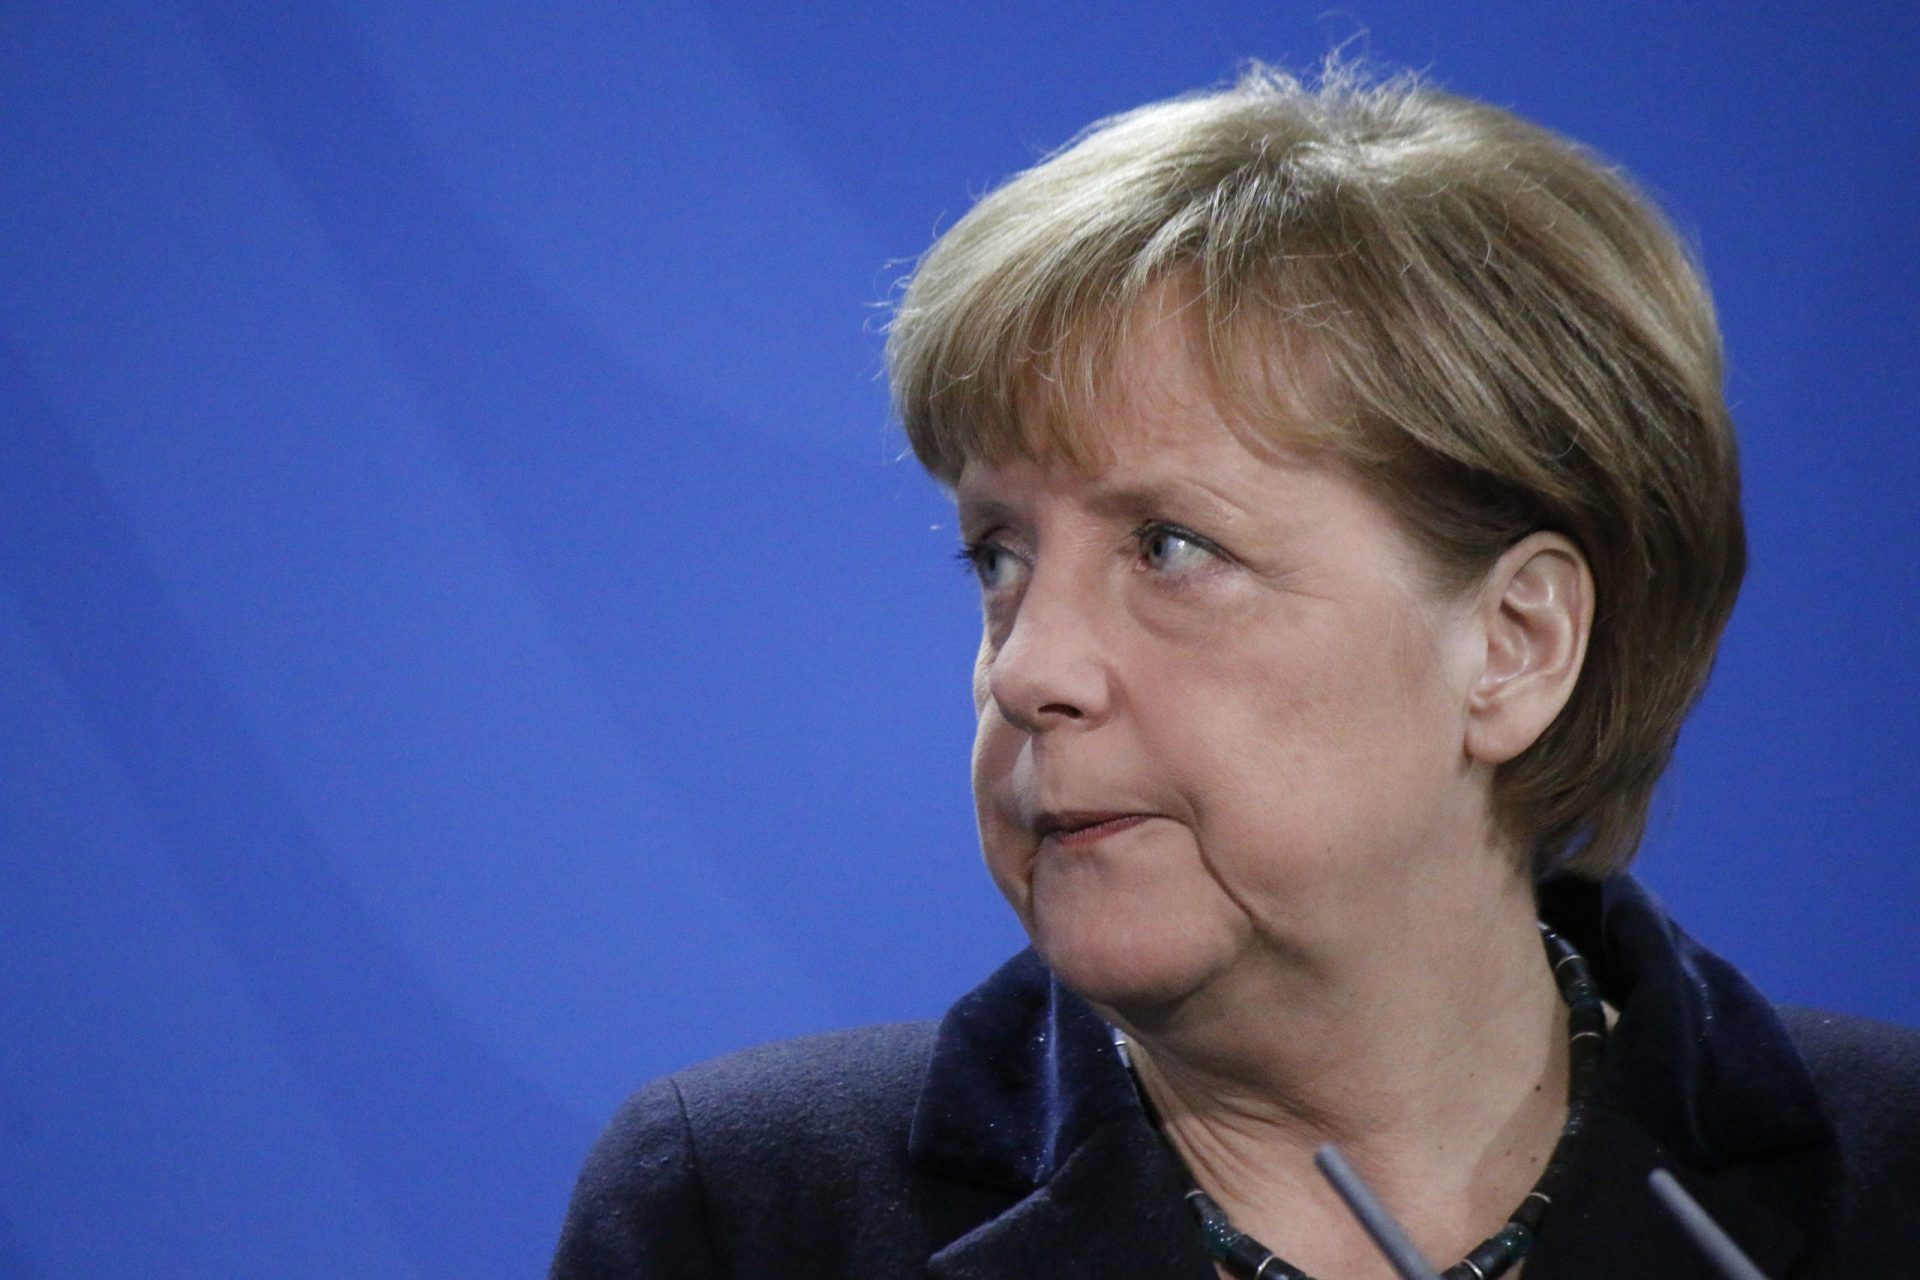 Crise no Governo alemão após escândalo de espionagem